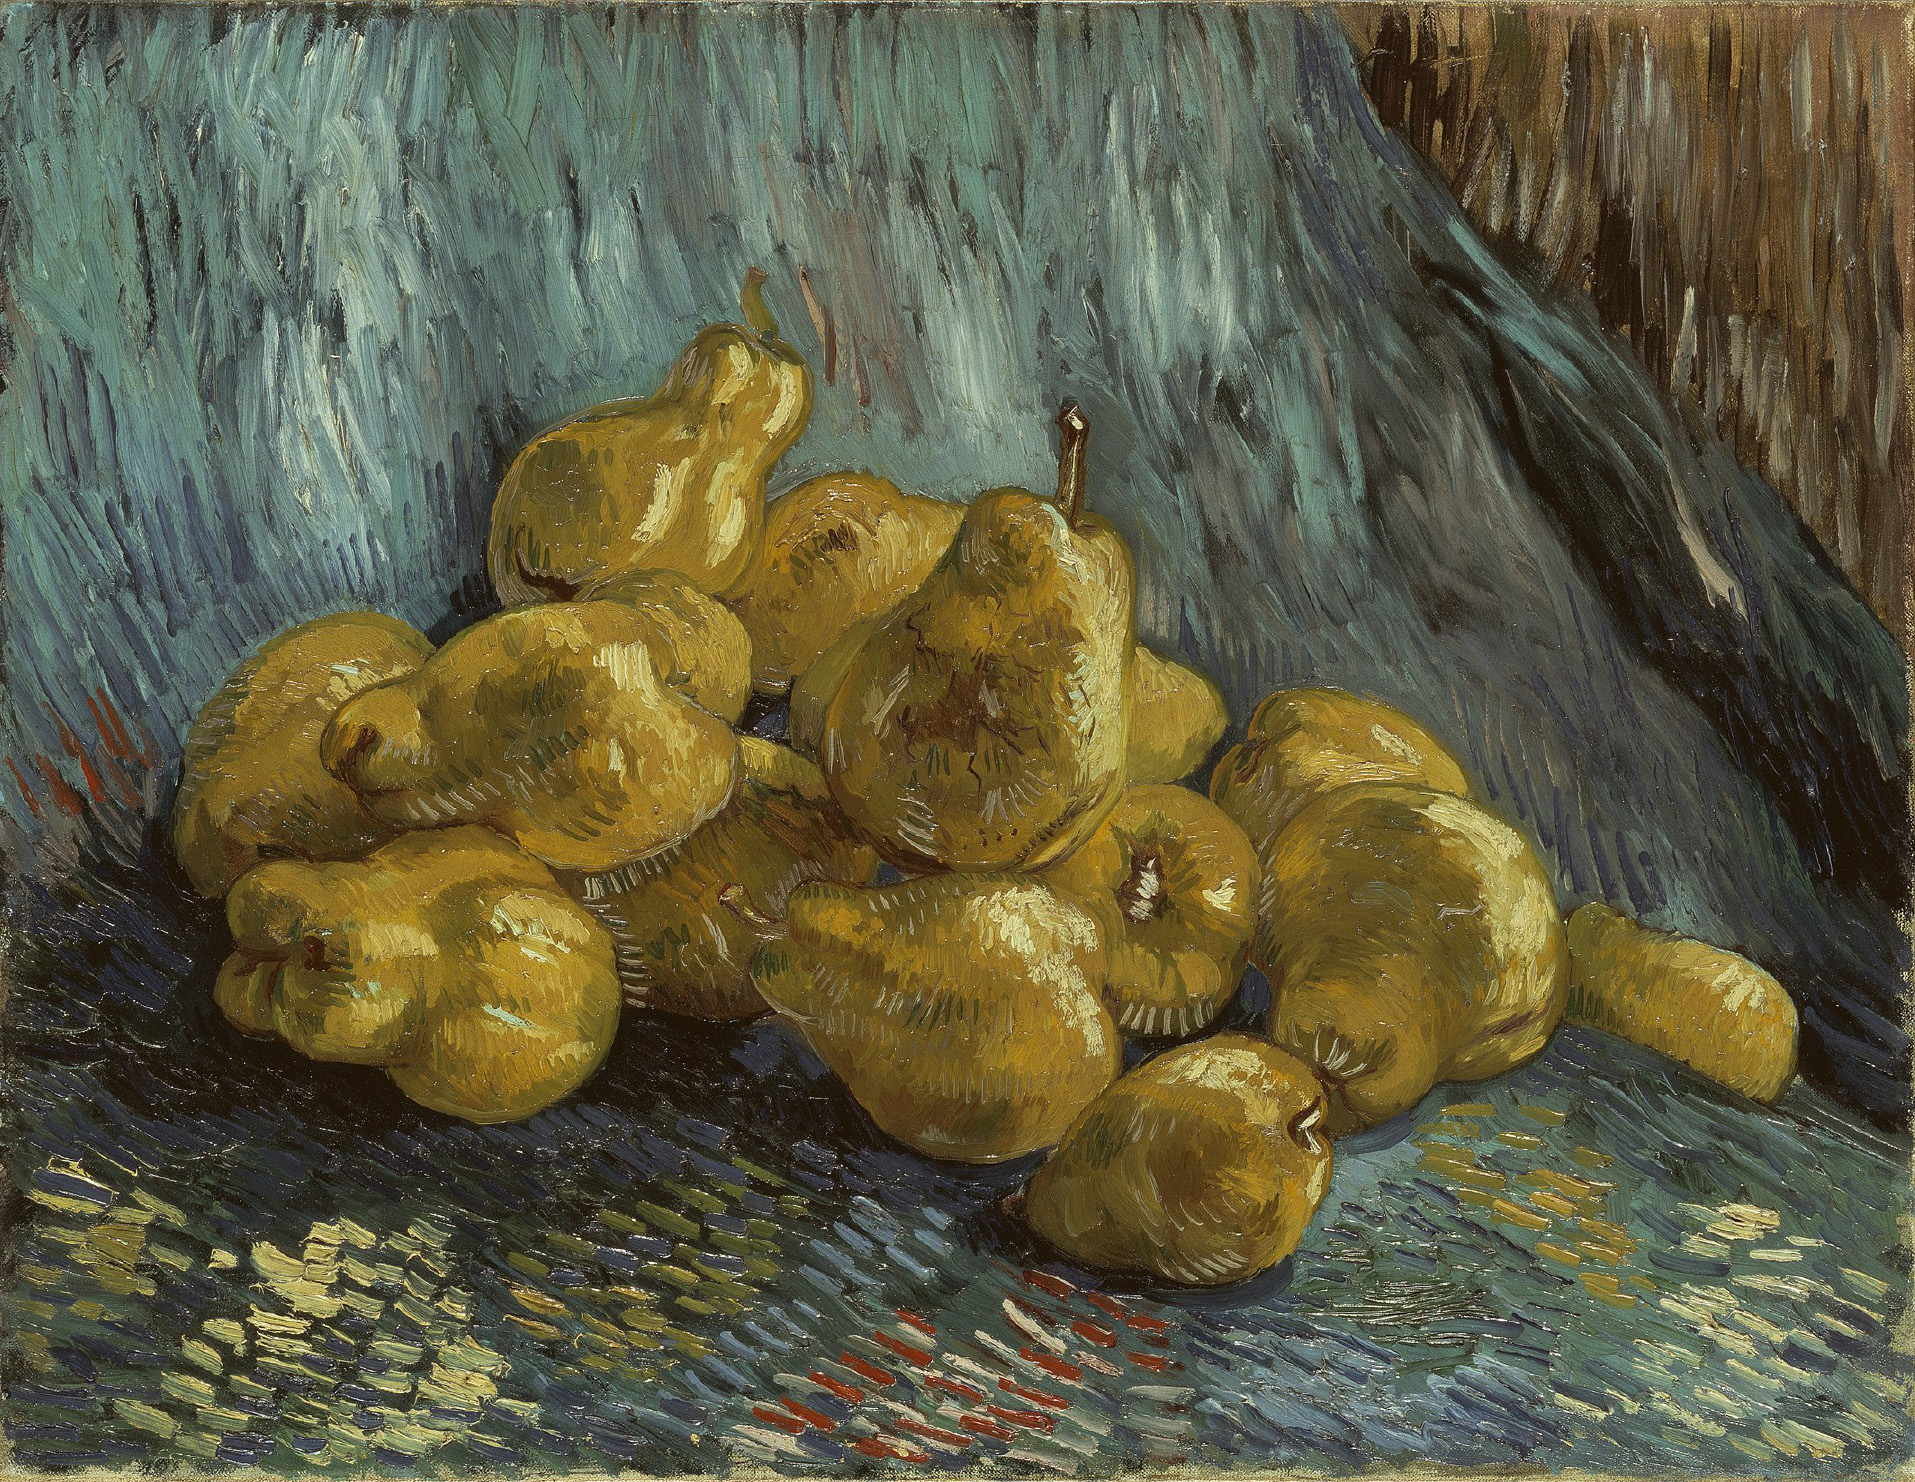 Bodegón con Membrillos by Vincent van Gogh - 1887/88 - 46 x 59,5 cm Colecciones estatales de arte de Dresde